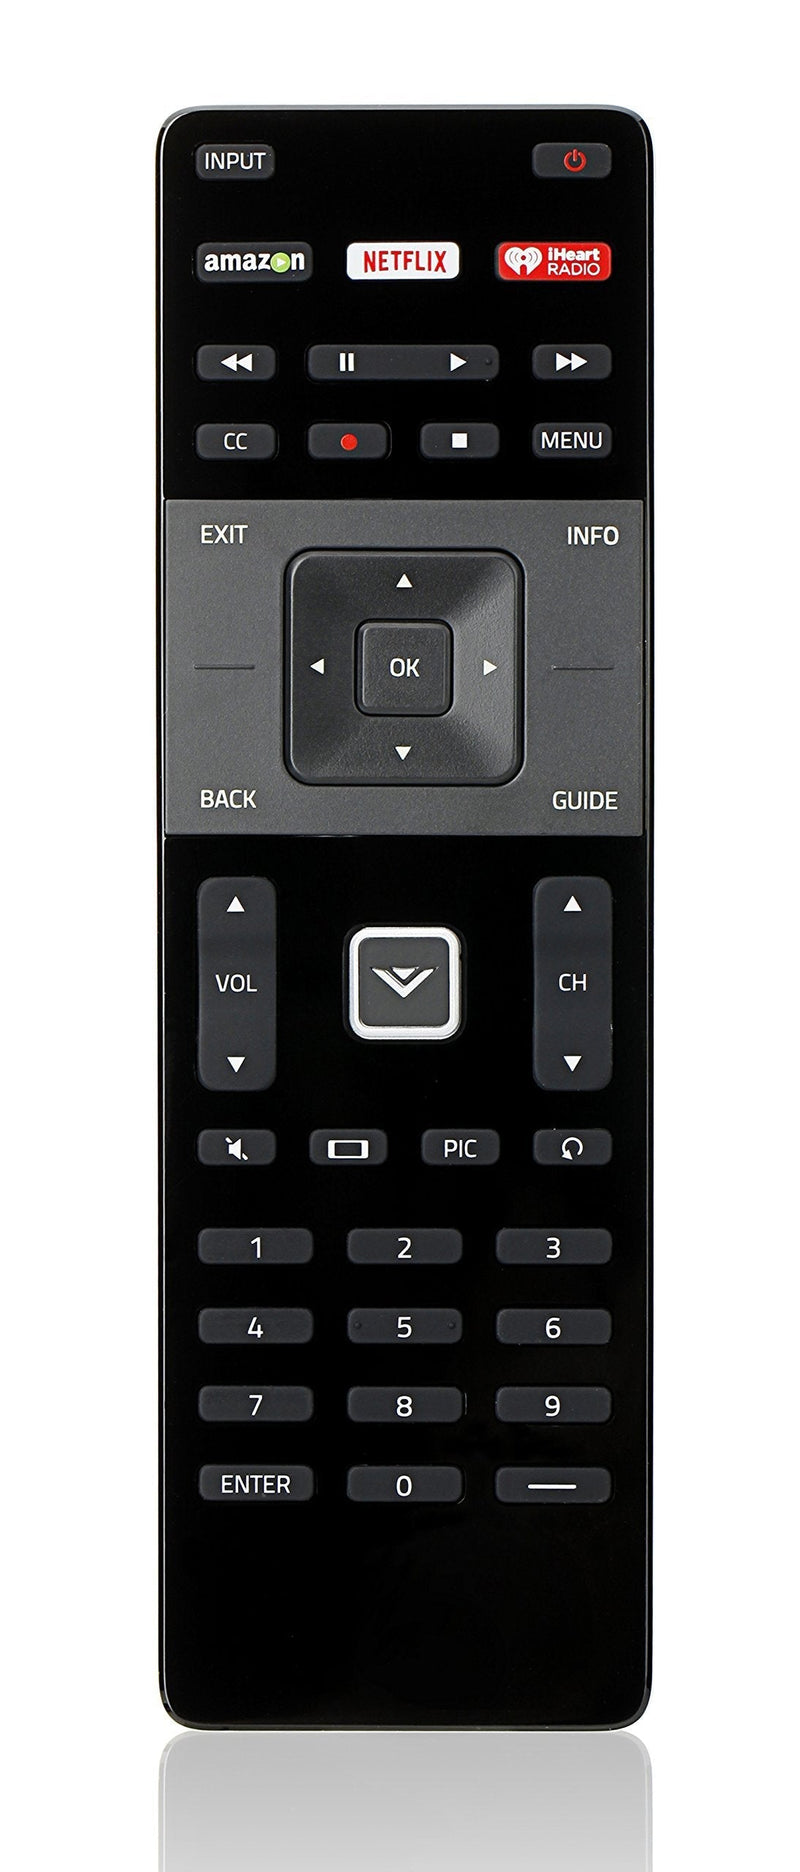 New XRT122 Remote fit for Vizio D39H-D0 D39HD0 D50UD1 E40X-C2 E32hc1 E40c2 E40X-C2 E40xc2 E43-c2 E43c2 E48-c2 E48c2 E50-c1 E50c1 E55-c2 E Series LCD LED TV - LeoForward Australia